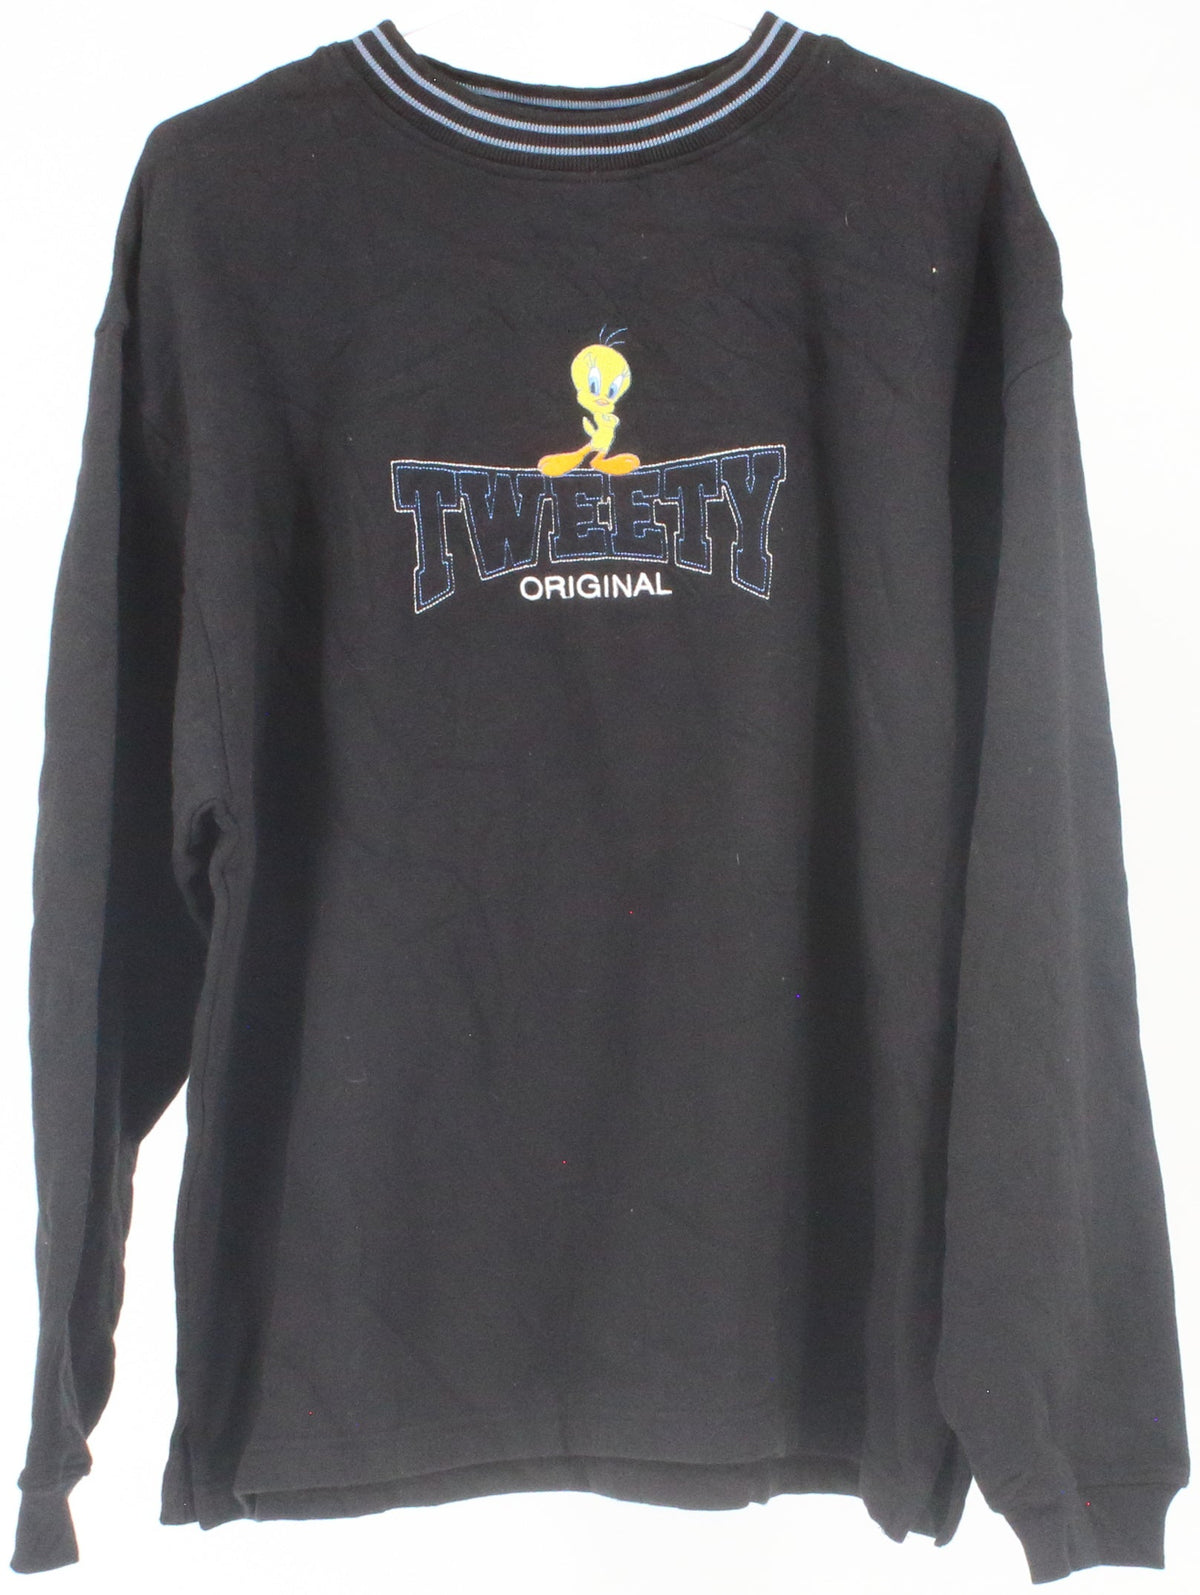 Looney Tunes Tweety Original Black Sweatshirt